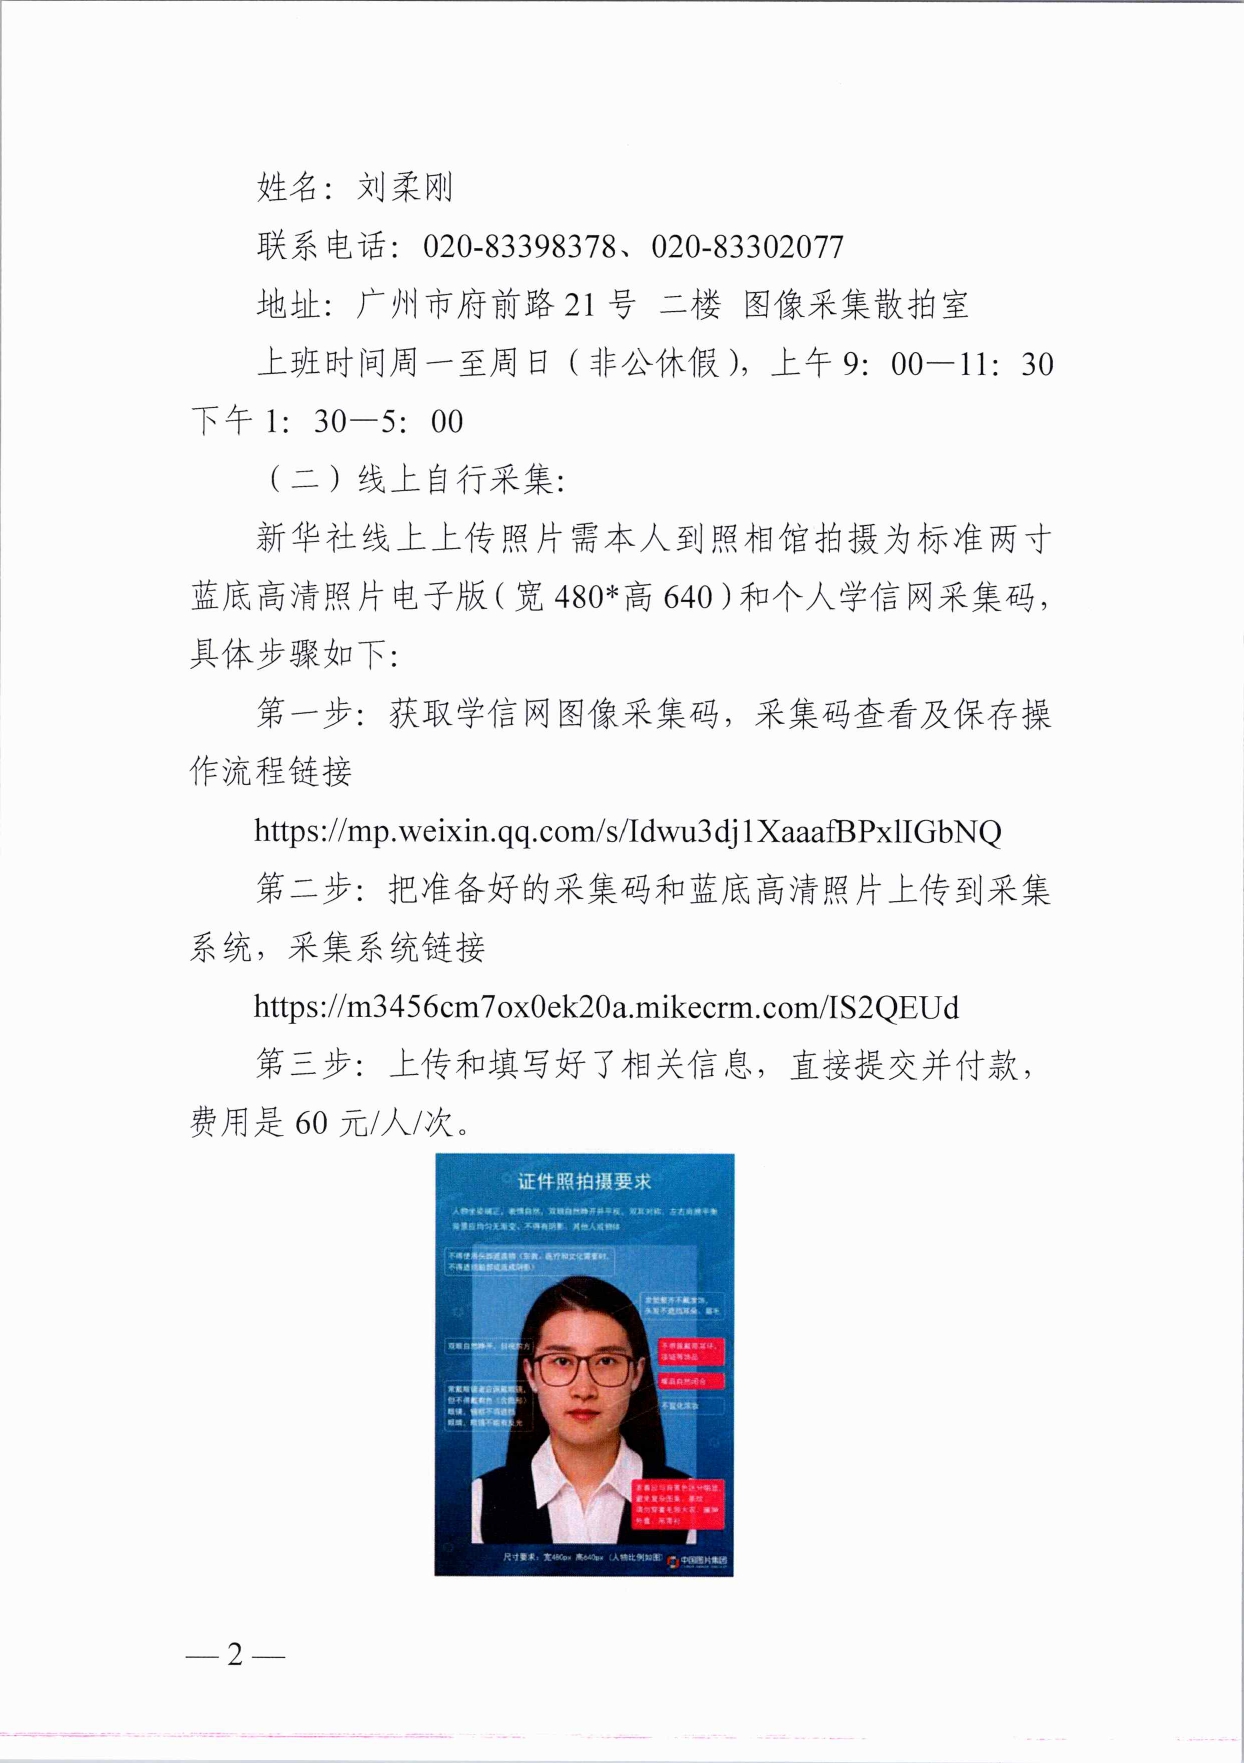 广州华商学院继续教育学院关于成人高等教育在籍学生图像采集的通知_page-0002.jpg